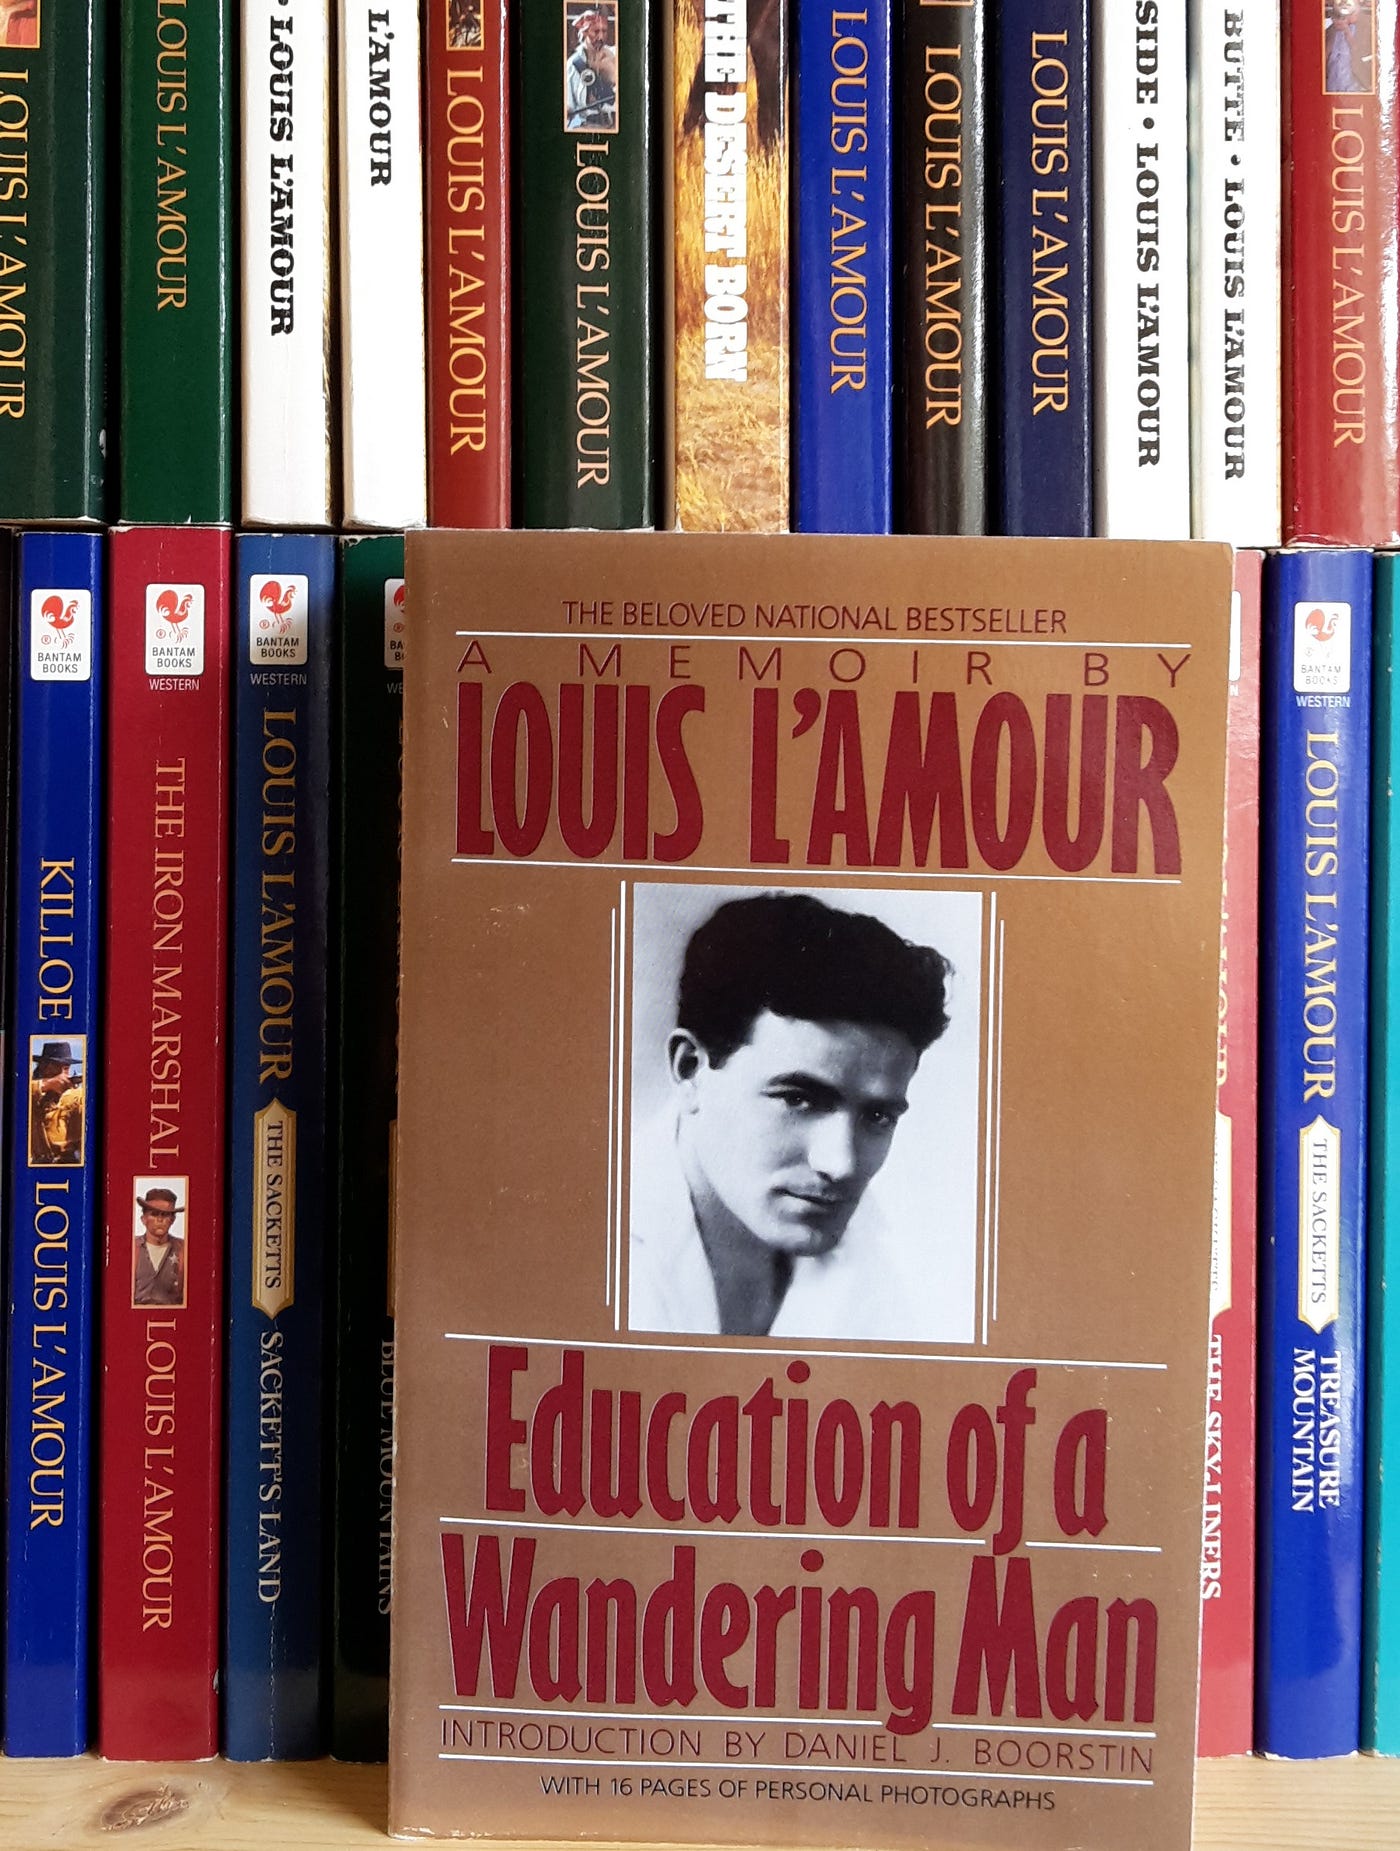 L'Amour, Louis's Books